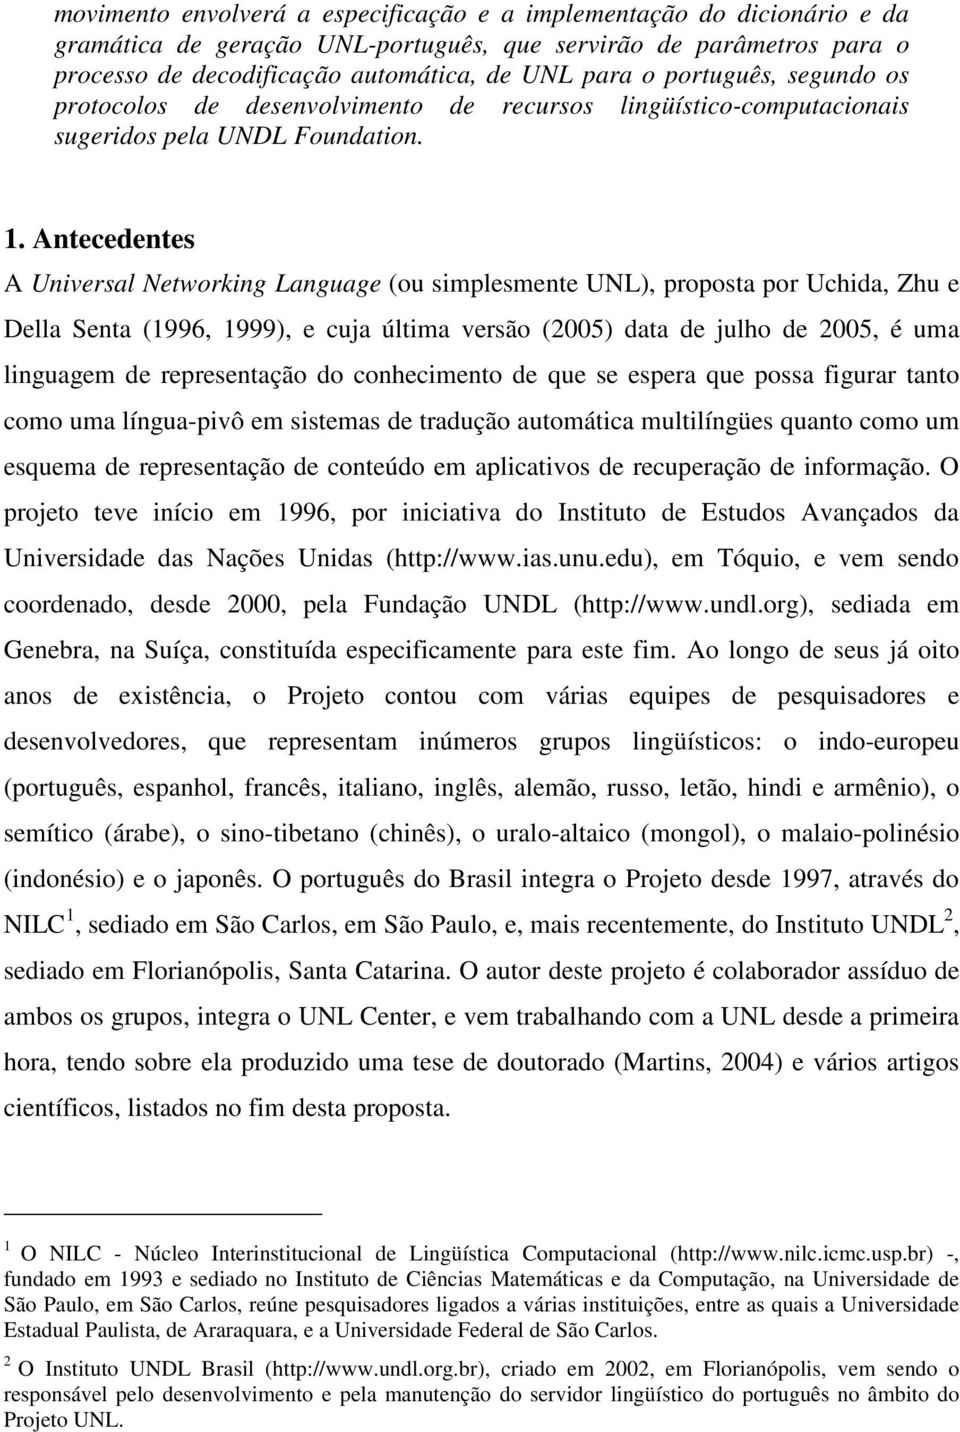 Antecedentes A Universal Networking Language (ou simplesmente UNL), proposta por Uchida, Zhu e Della Senta (1996, 1999), e cuja última versão (2005) data de julho de 2005, é uma linguagem de